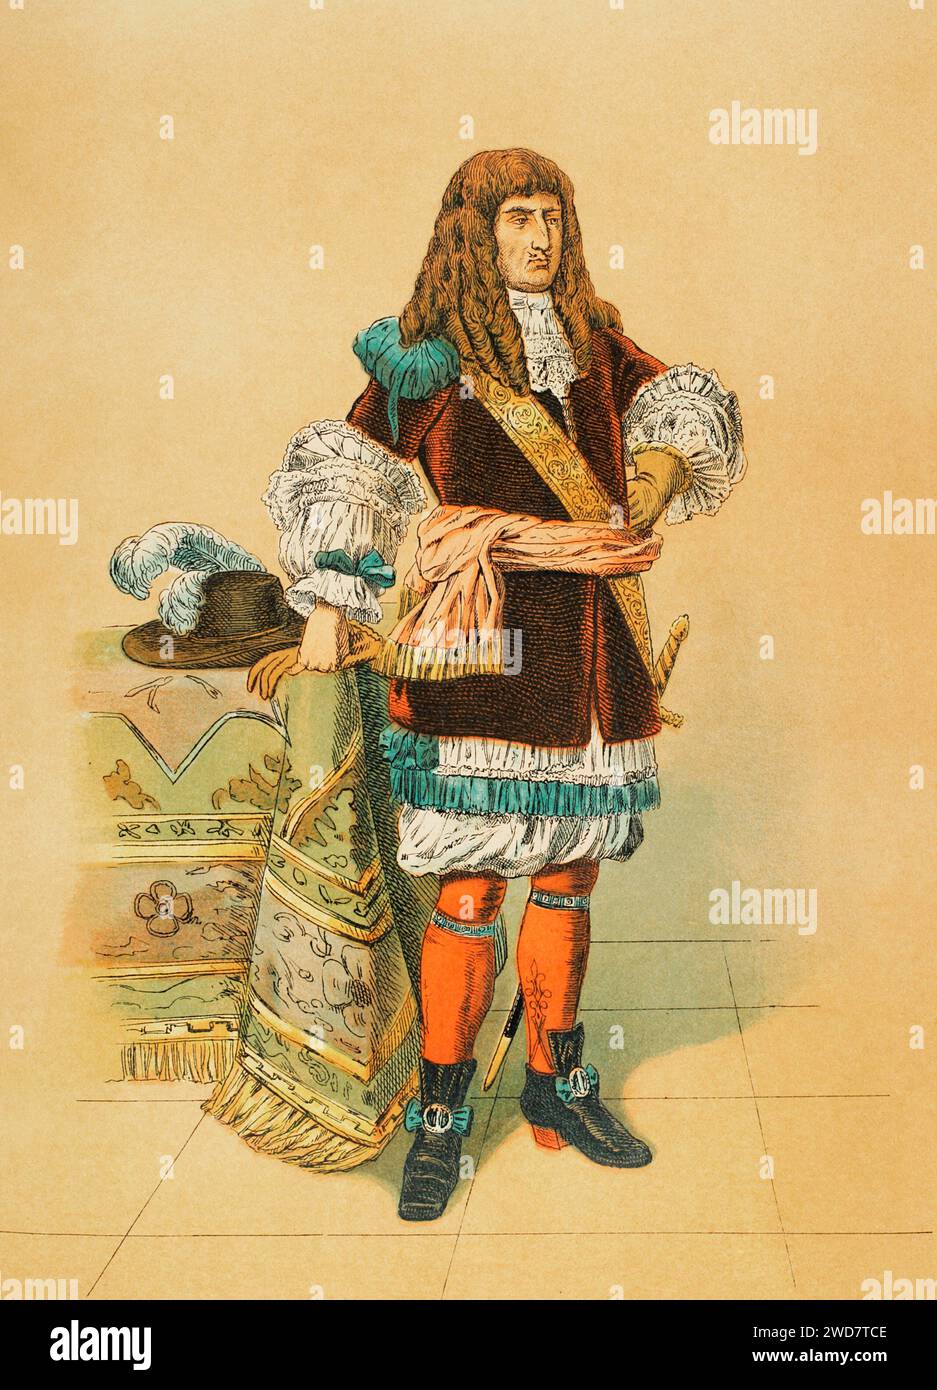 Ludwig XIV., bekannt als „der Sonnenkönig“ (1638–1715). König von Frankreich (1643-1715). Hochformat. Chromolithographie. "Historia Universal", von César Cantú. Band VIII, 1881. Stockfoto